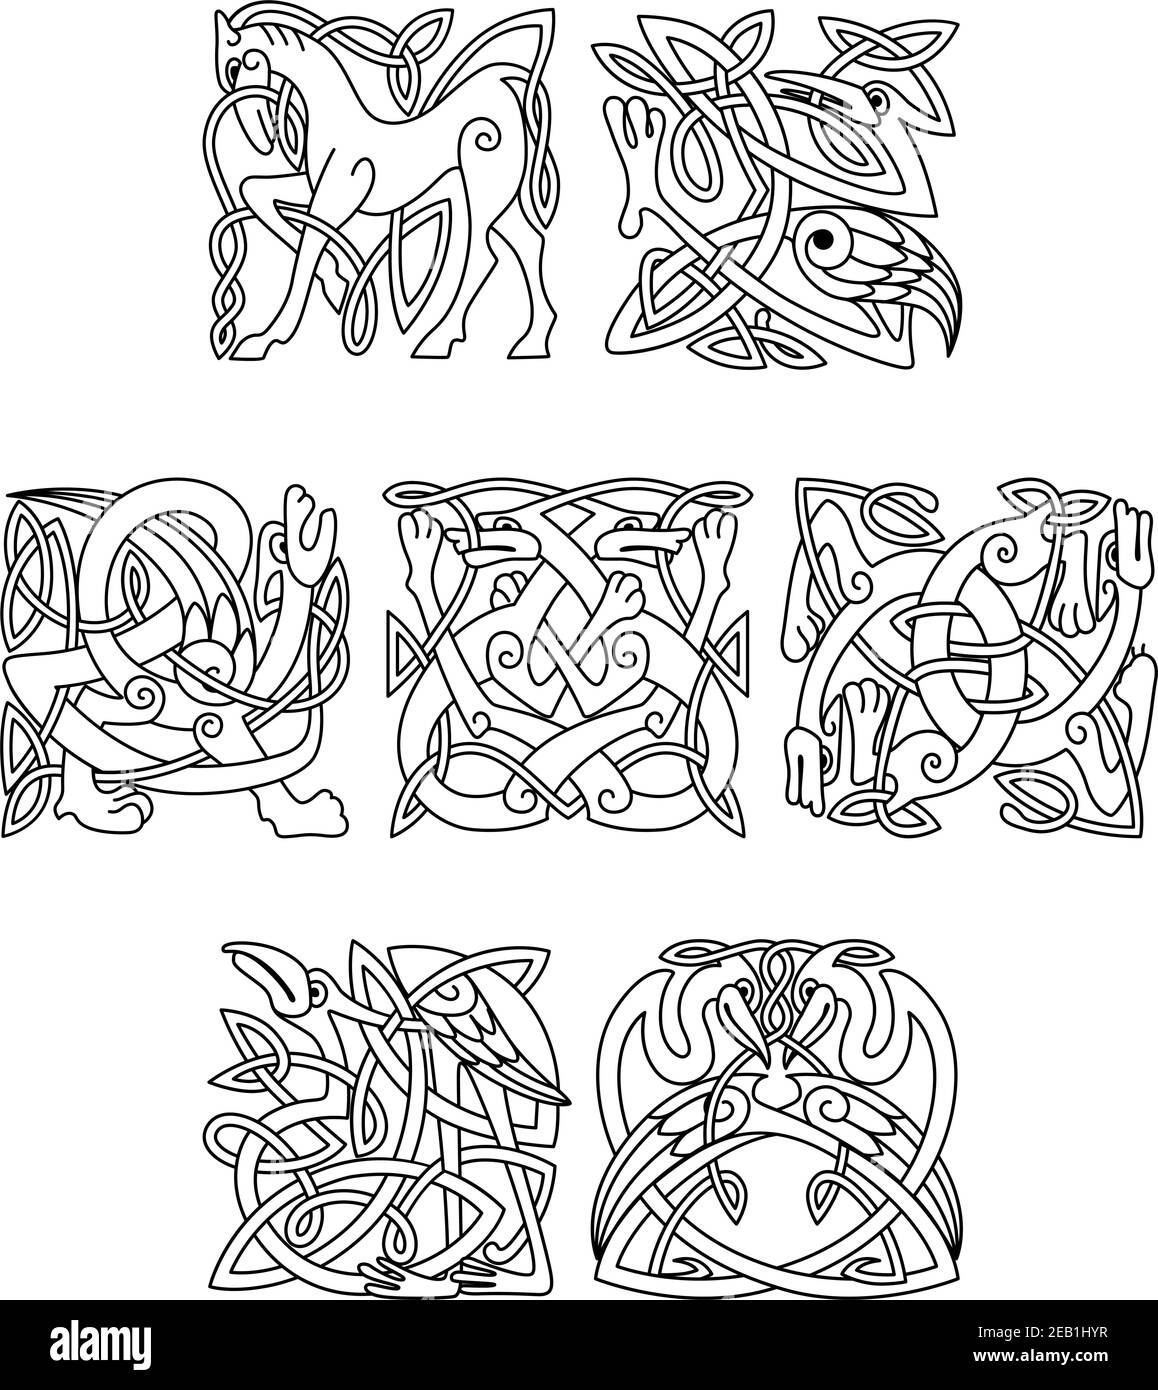 Quadratische dekorative keltische Motive von kunstvoll verflochtenen Tieren und Vögeln In schwarz-weißen Linienzeichnungen Stock Vektor